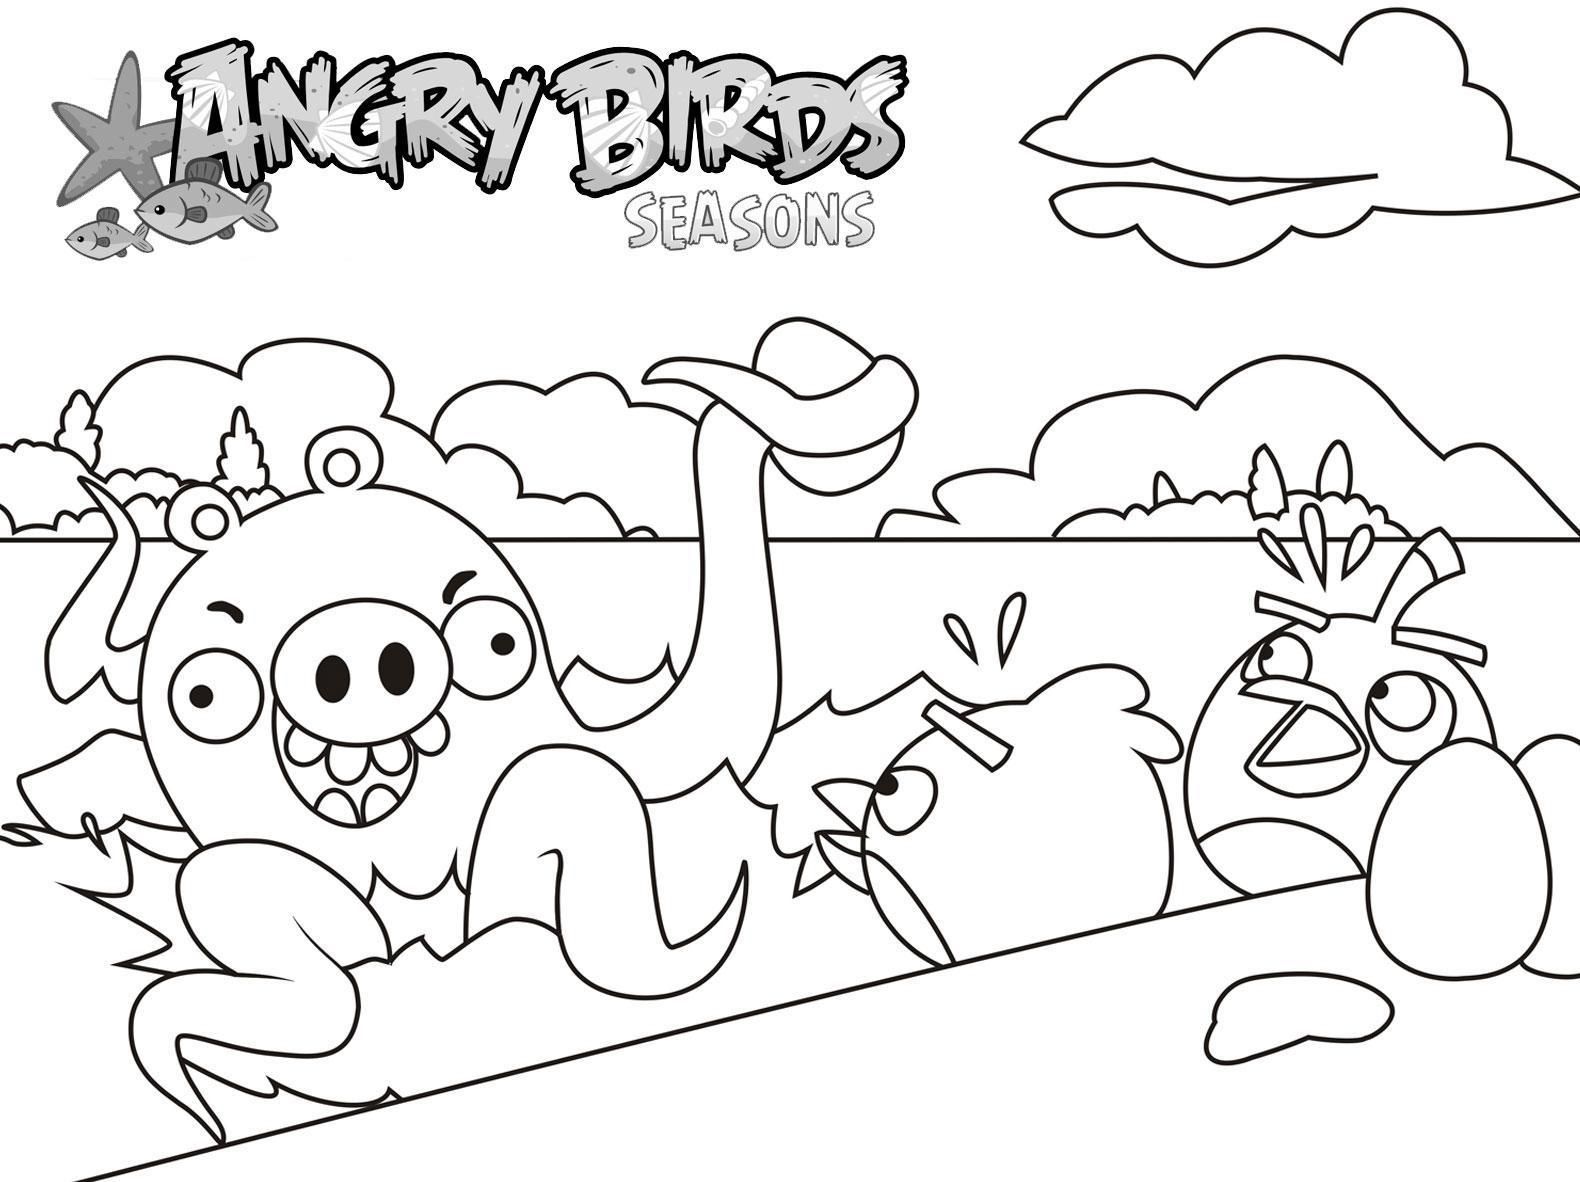 Tranh tô màu Angry Birds sáng tạo, đẹp nhất